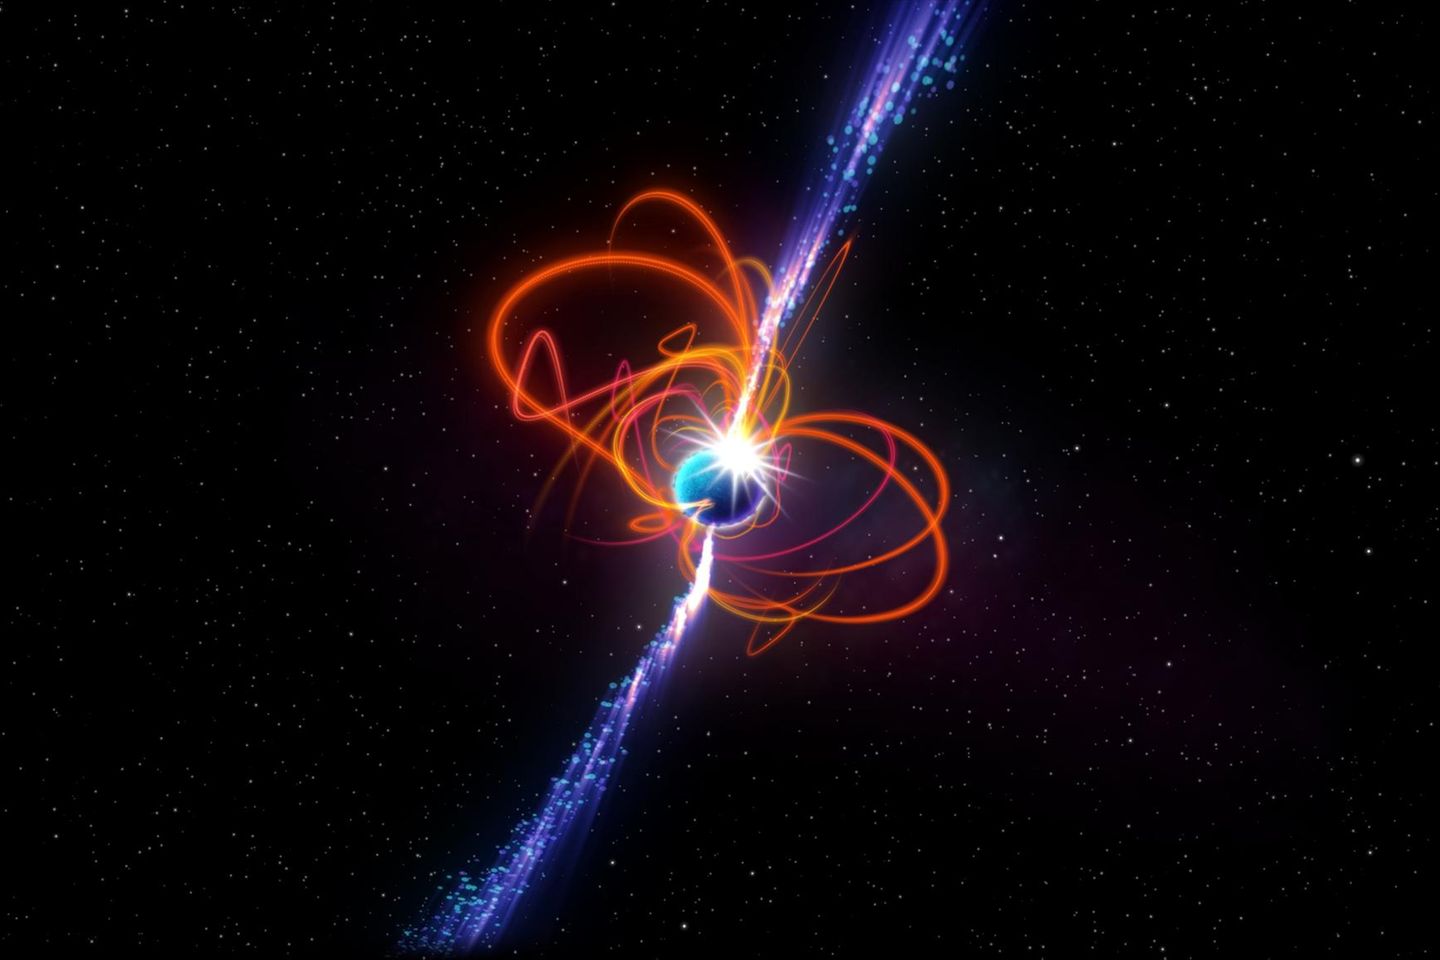 Künstlerische Darstellung des extrem langperiodischen Magnetars: einer seltenen Sternenart mit extrem starken Magnetfeldern, die gewaltige Energieausbrüche erzeugen können